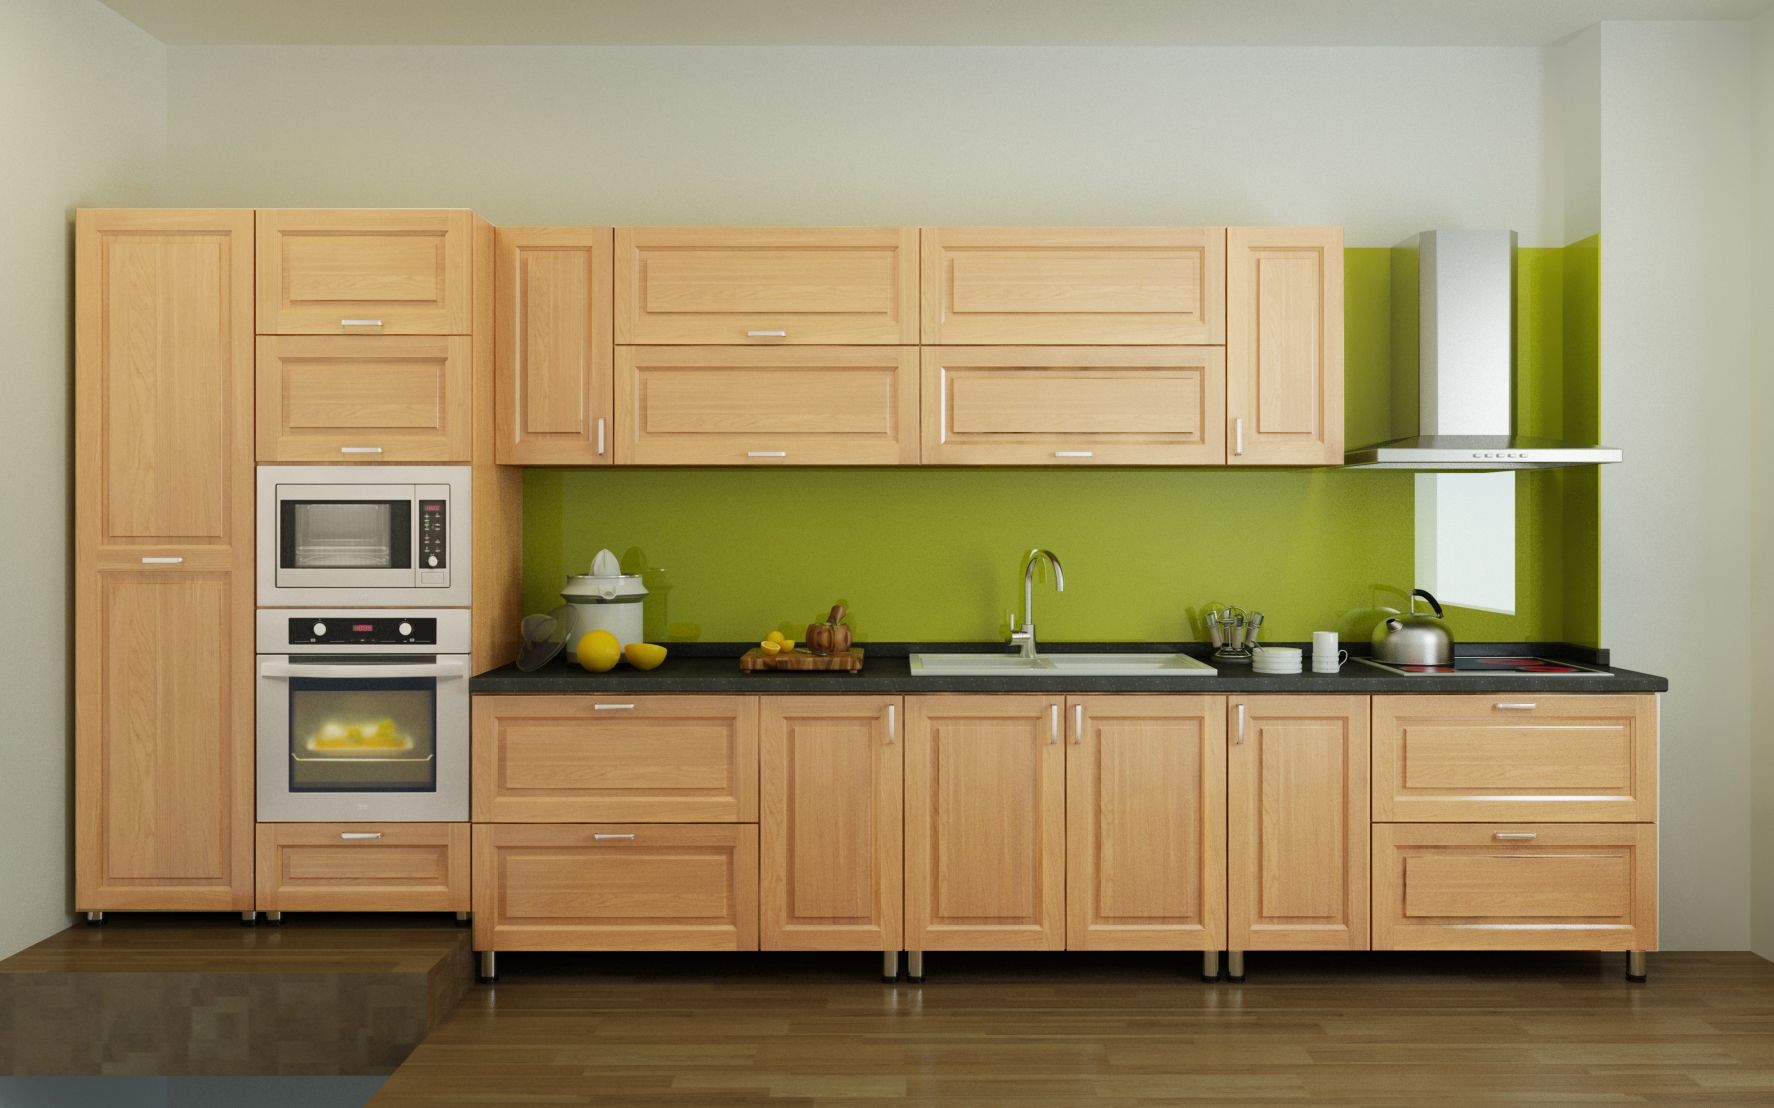 Tủ bếp gỗ sồi tự nhiên - Thiết kế tinh tế và chất liệu bền bỉ, tạo nên không gian bếp ấm cúng và sang trọng.